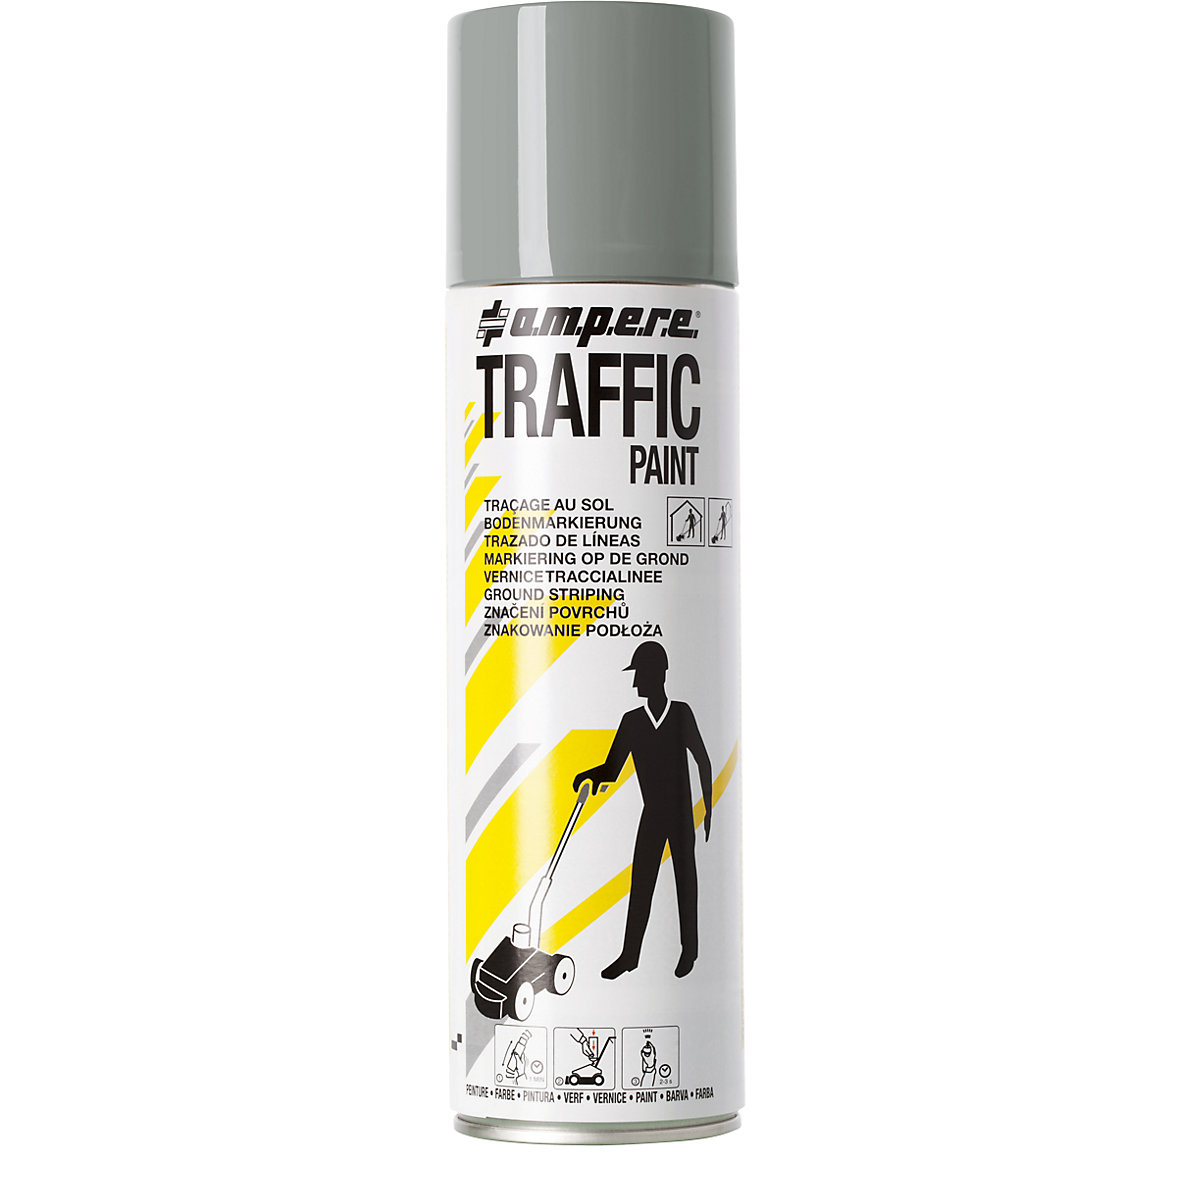 Peinture de marquage Traffic Paint® – Ampere, contenu 500 ml, lot de 12 aérosols, gris-7